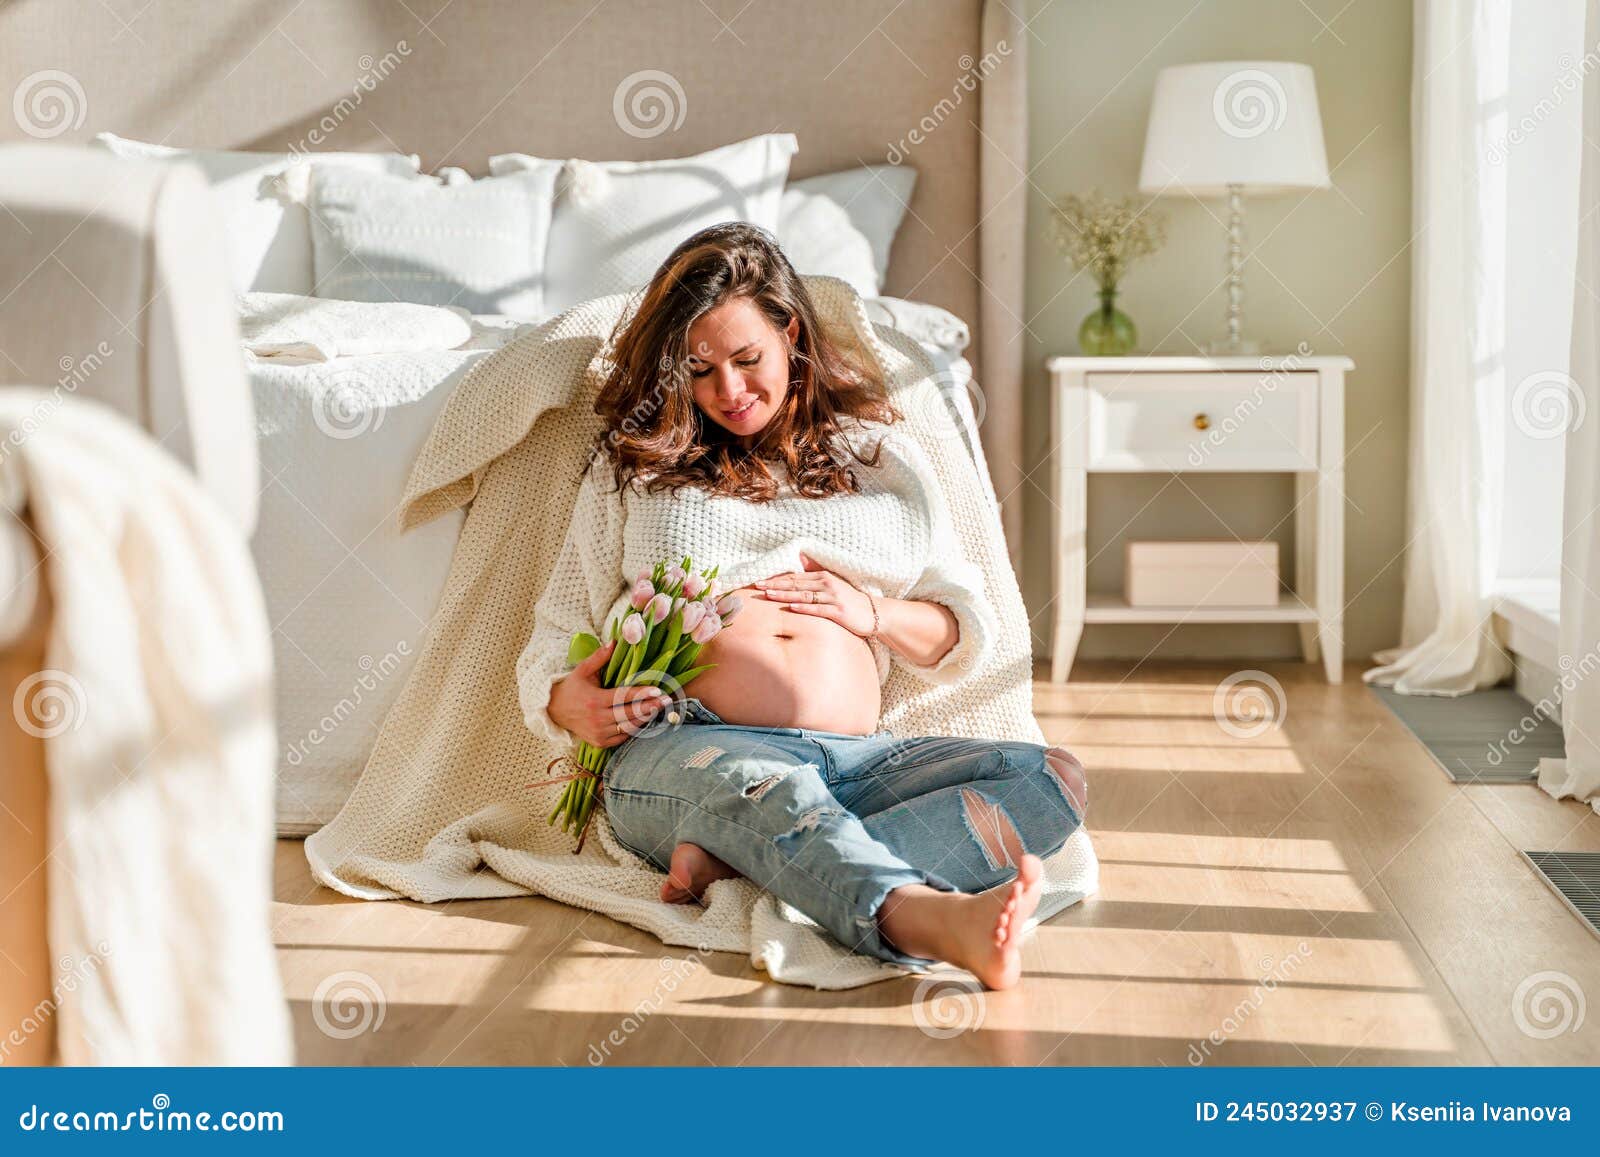 Linda Mujer Joven Embarazada Con Ropa Moderna En Habitación Blanca. El  Concepto De Maternidad Y Embarazo Imagen de archivo - Imagen de cuidado,  abdomen: 245032937